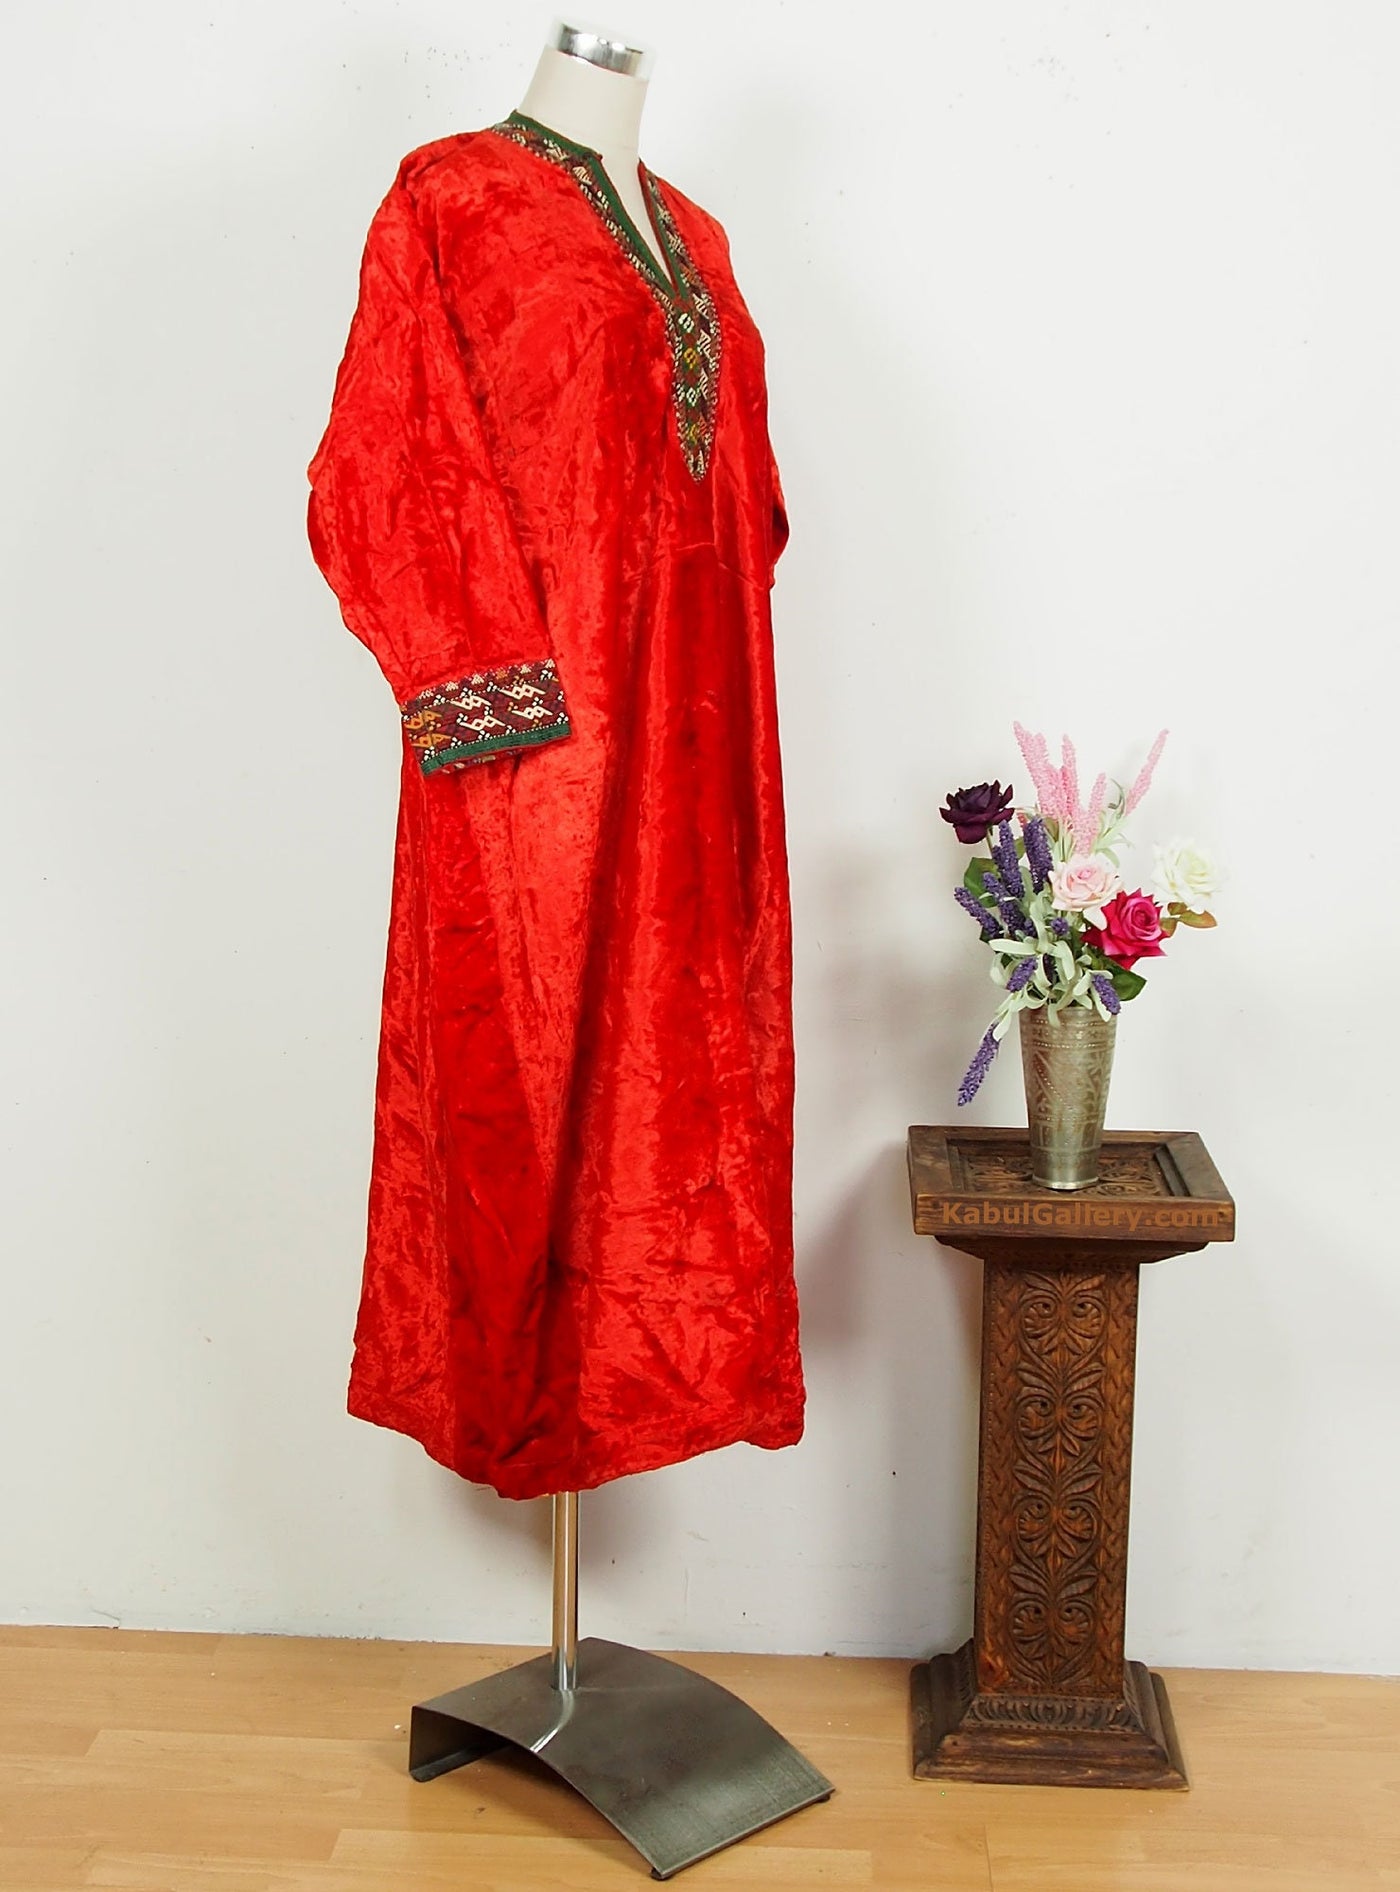 antik Orient Nomaden kuchi frauen Hochzeit Tracht afghan uzbek kleid afghanistan hand bestickte kostüm Nr-18-8  Orientsbazar   